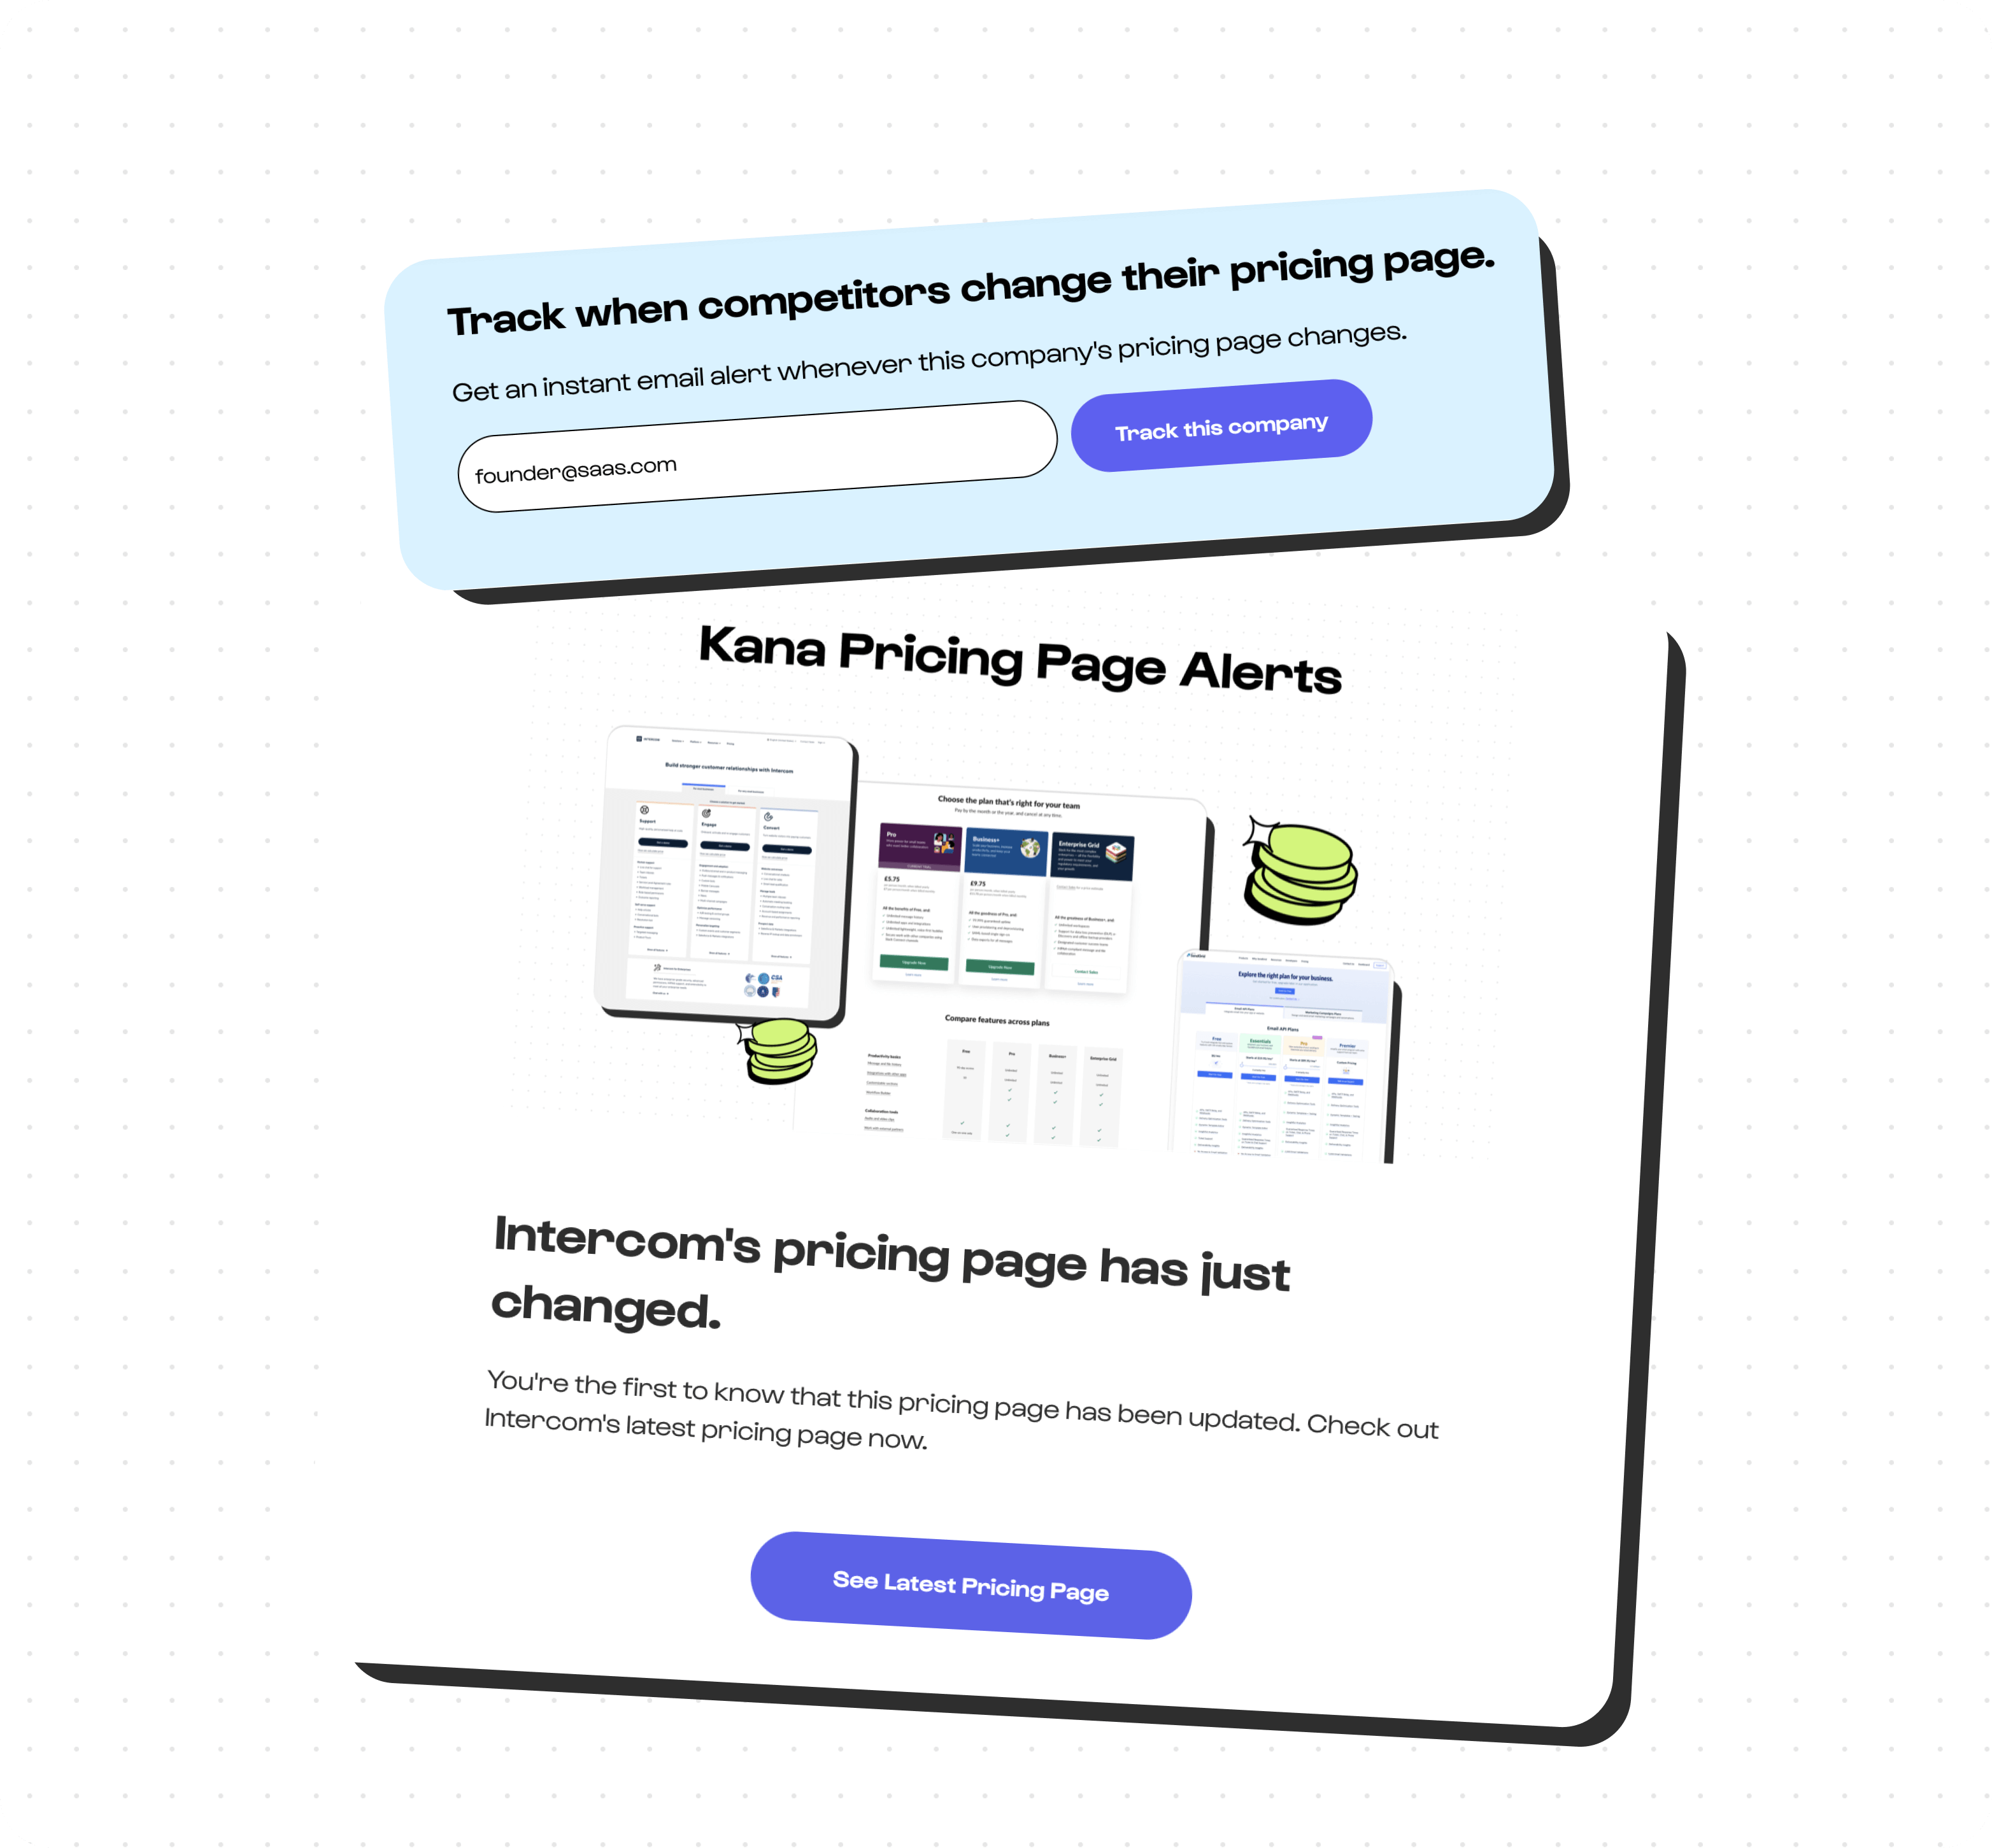 Kana's pricing alert sign up and alert